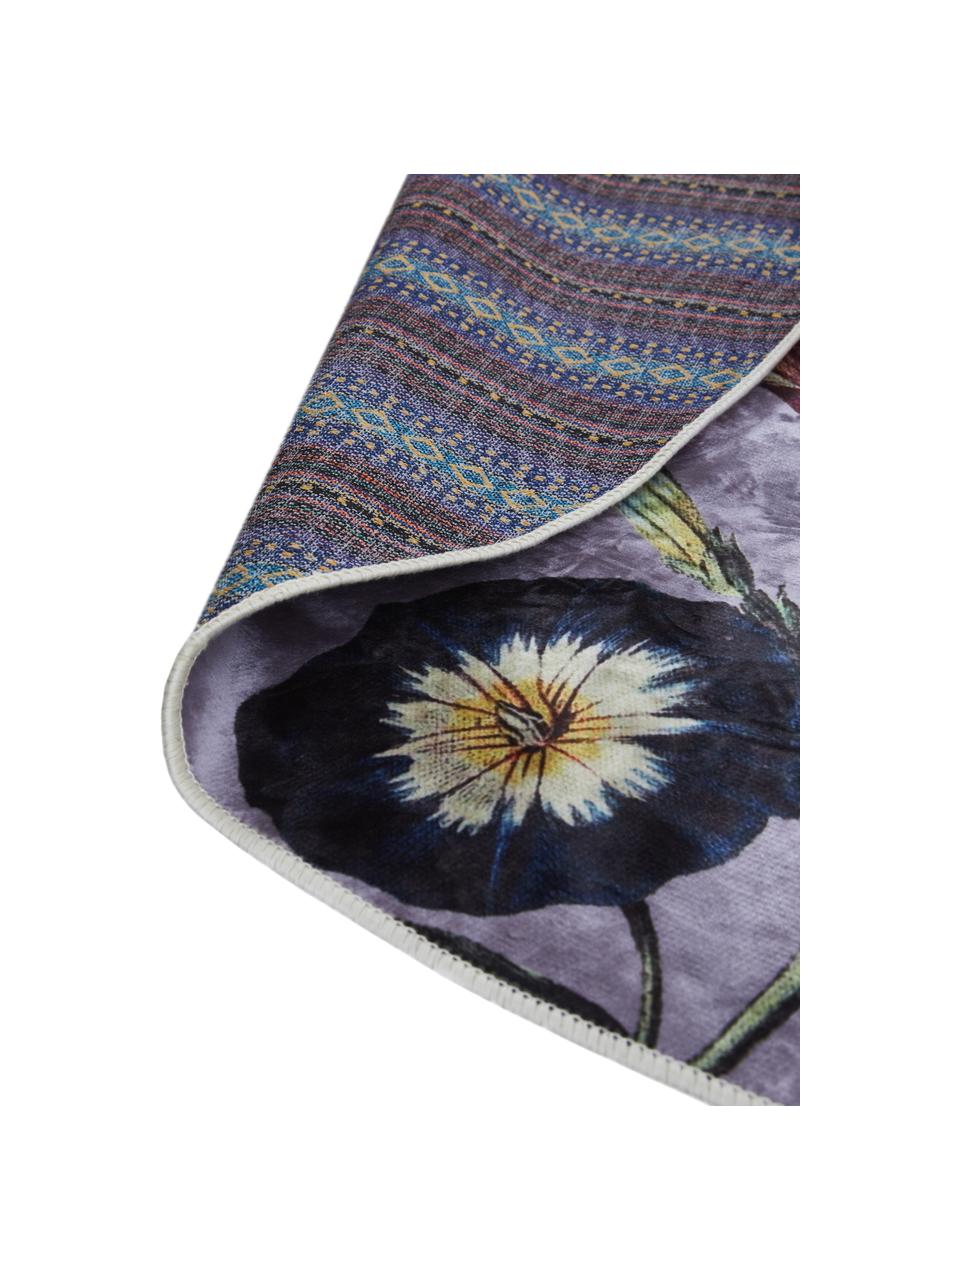 Runder Teppich Filou mit Blumenmuster, 60% Polyester, 30% thermoplastisches Polyurethan, 10% Baumwolle, Lila, Mehrfarbig, Ø 180 cm (Größe L)